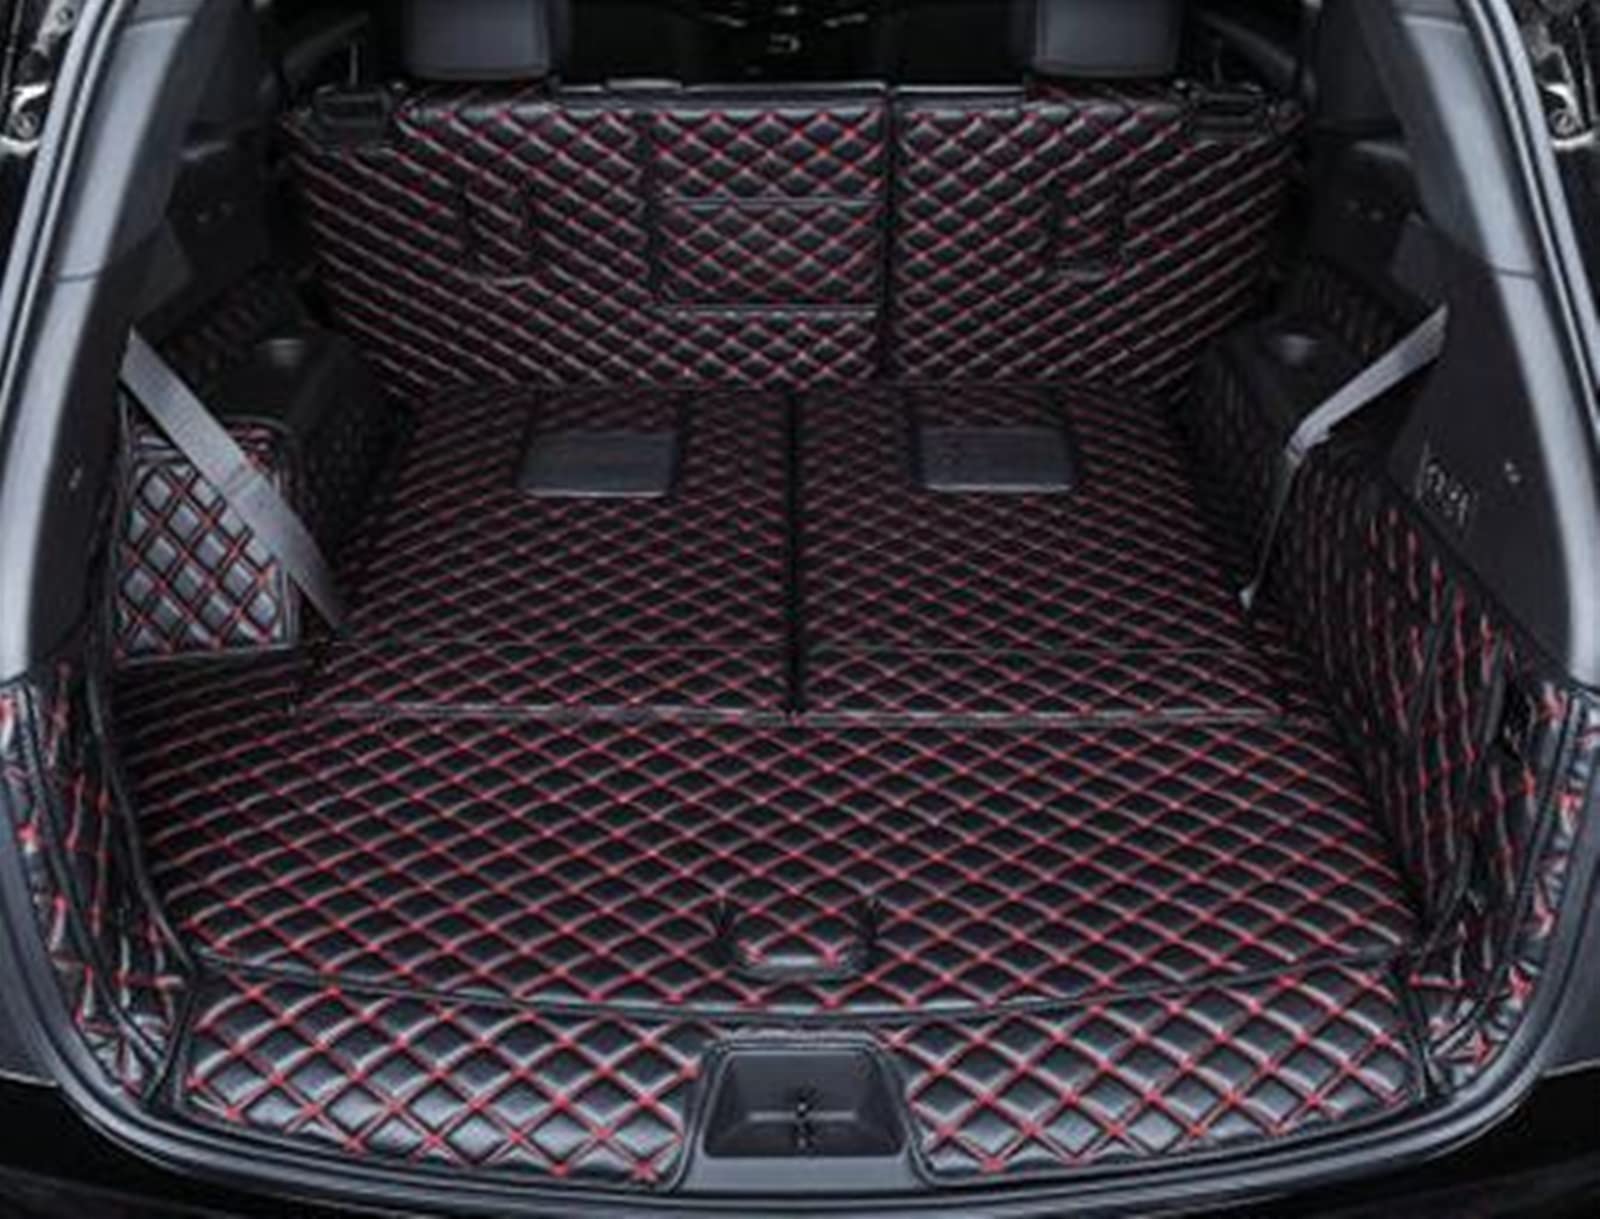 Auto Kofferraumschutz Kofferraumschutz Komplettset Kofferraummatten Kofferraumteppiche Cargo Liner Gepäckabdeckung Für Cadillac XT6 7 Sitze 2020 2021 2022 Antirutschmatte (Farbe : Black with red) von WAHRE